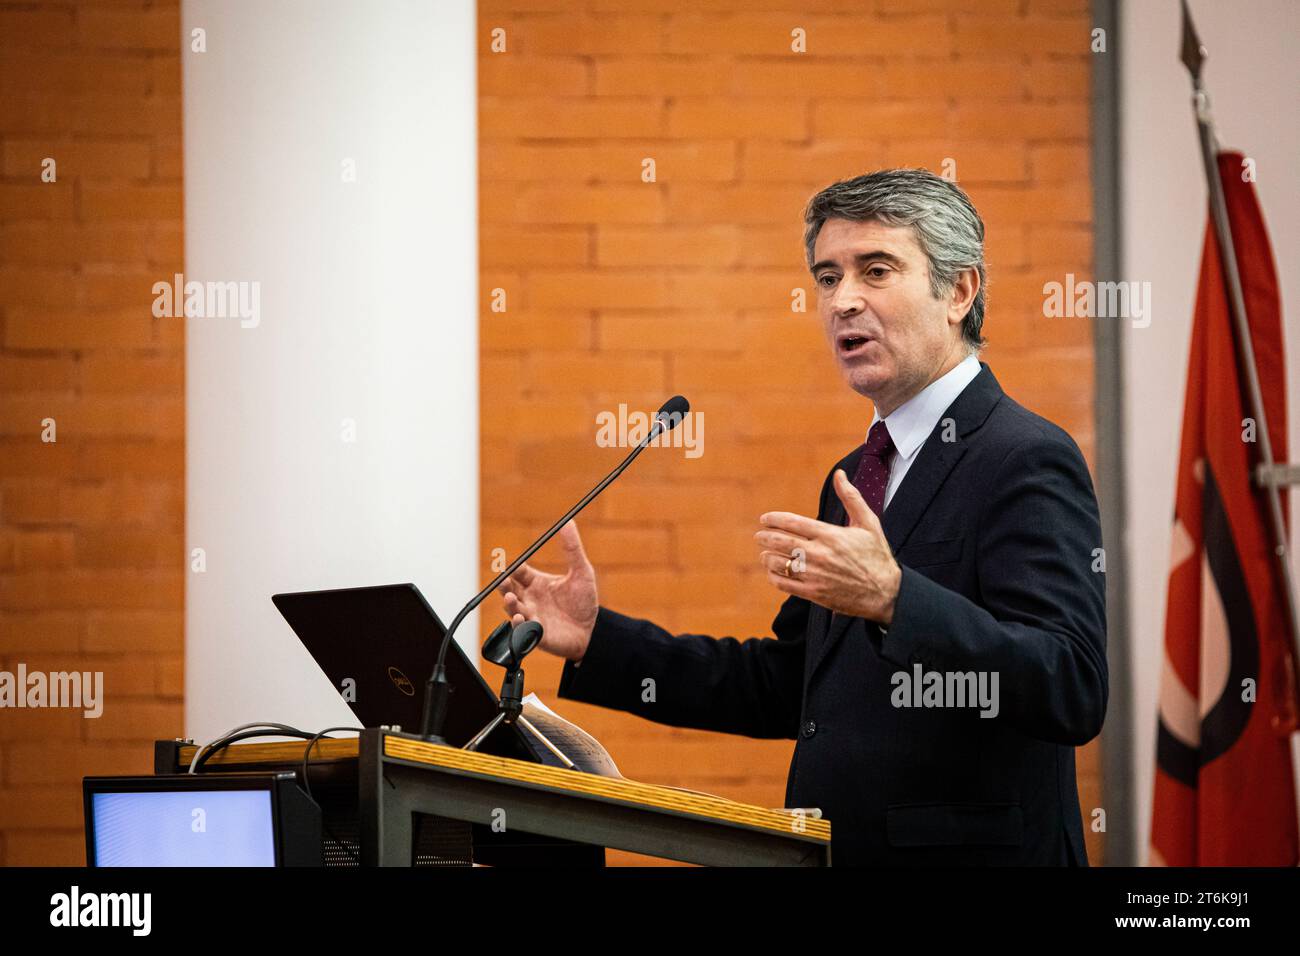 José Luís Carneiro, ministre de l'Administration interne, préside la séance d'ouverture de la conférence MAI(s) Proximo, à l'Instituto Superior de Engenharia do Porto (ISEP). Banque D'Images